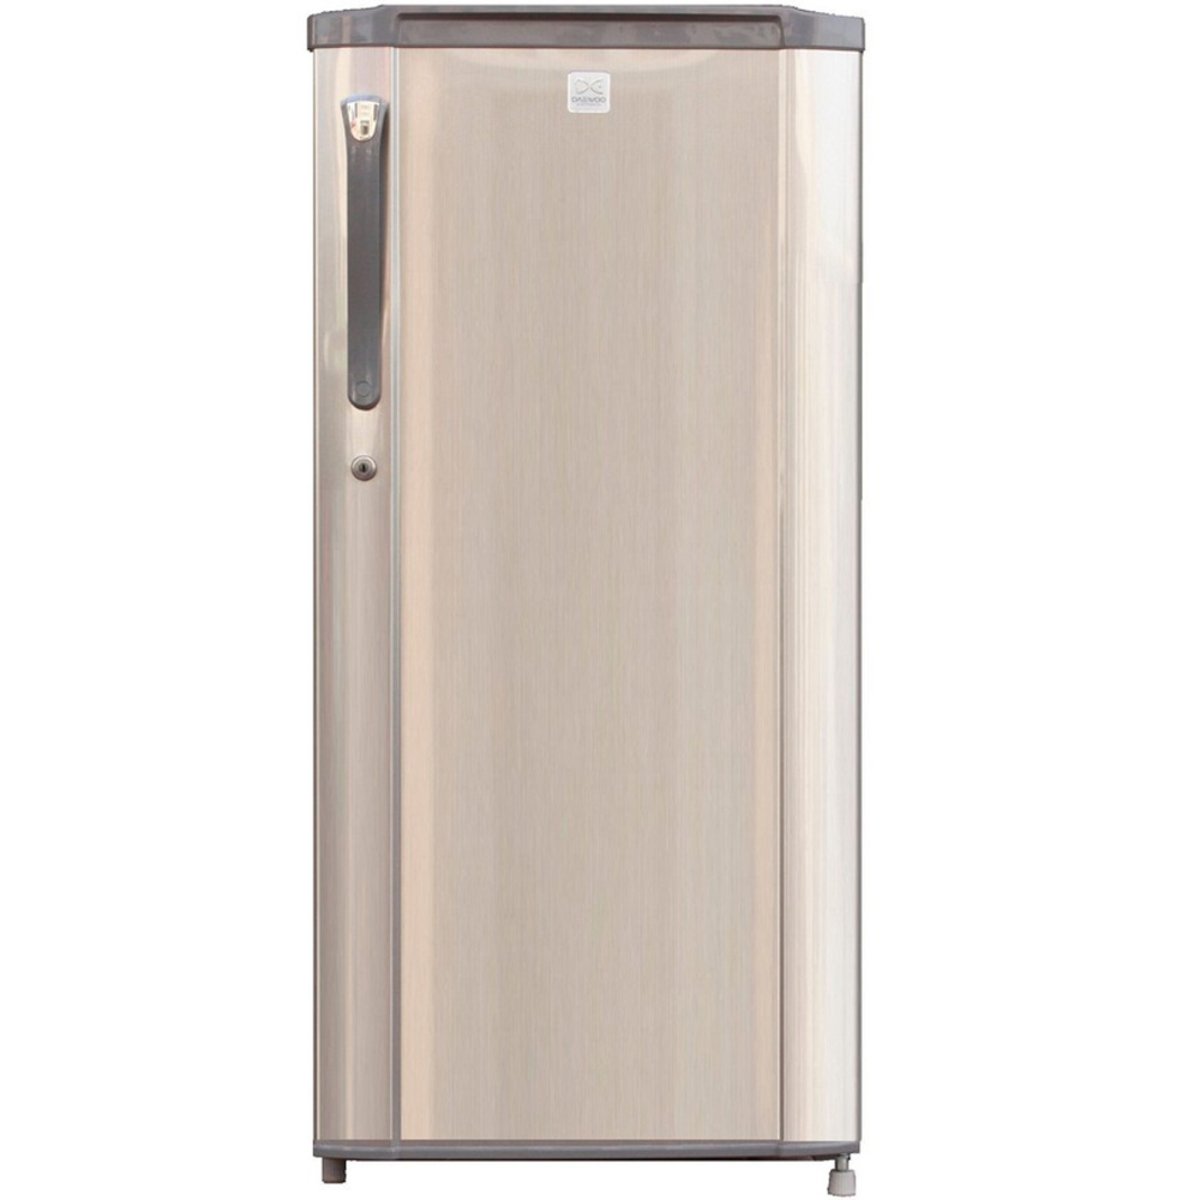 Daewoo Single Door Refrigerator FR-D61S 170Ltr